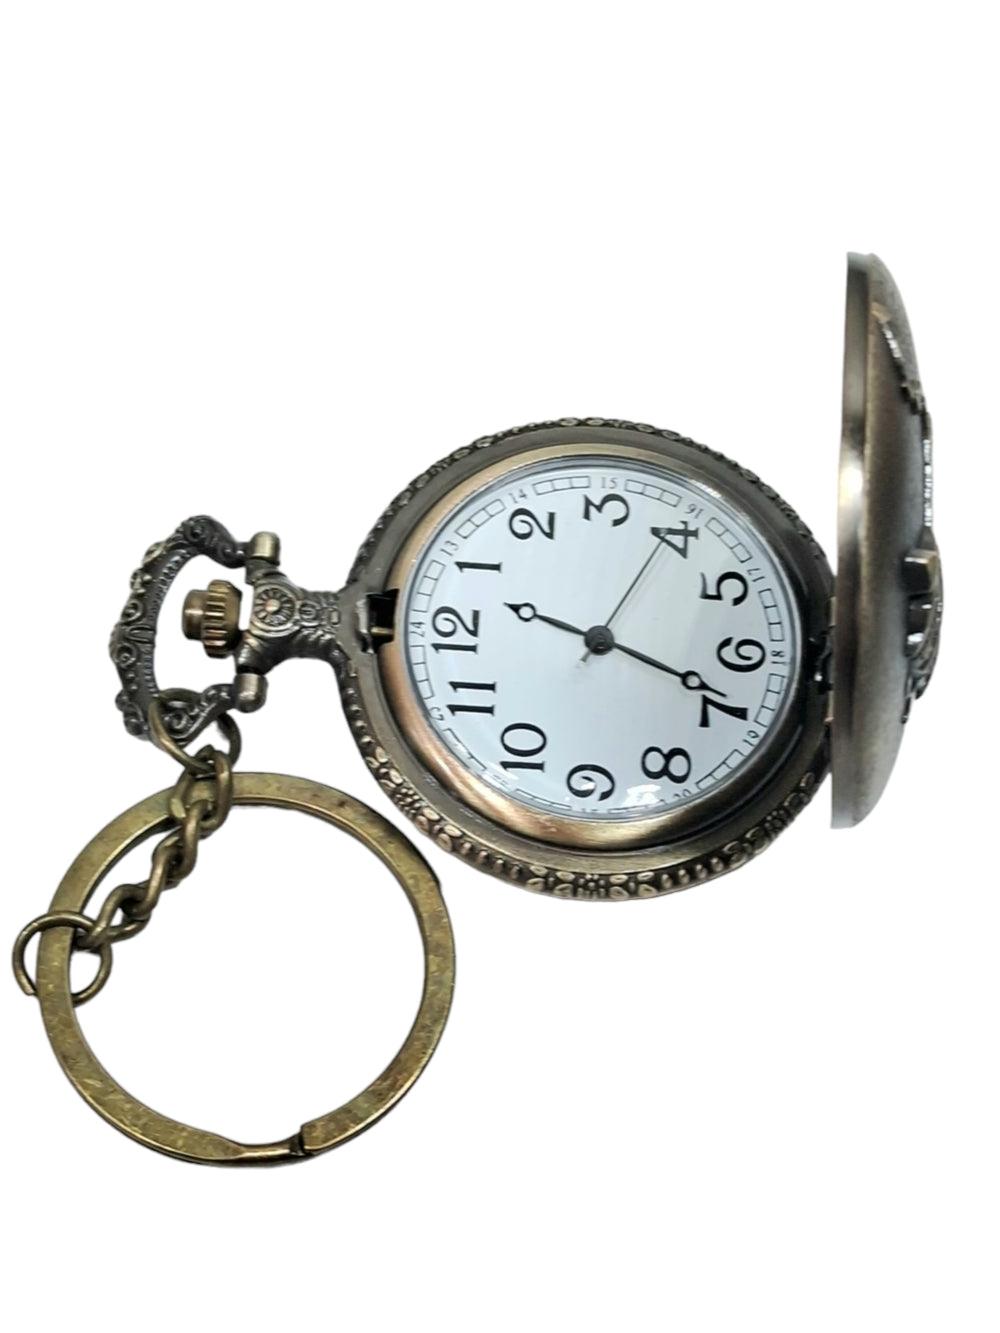 Antique Watch | Metal Keychain | Pocket Watch